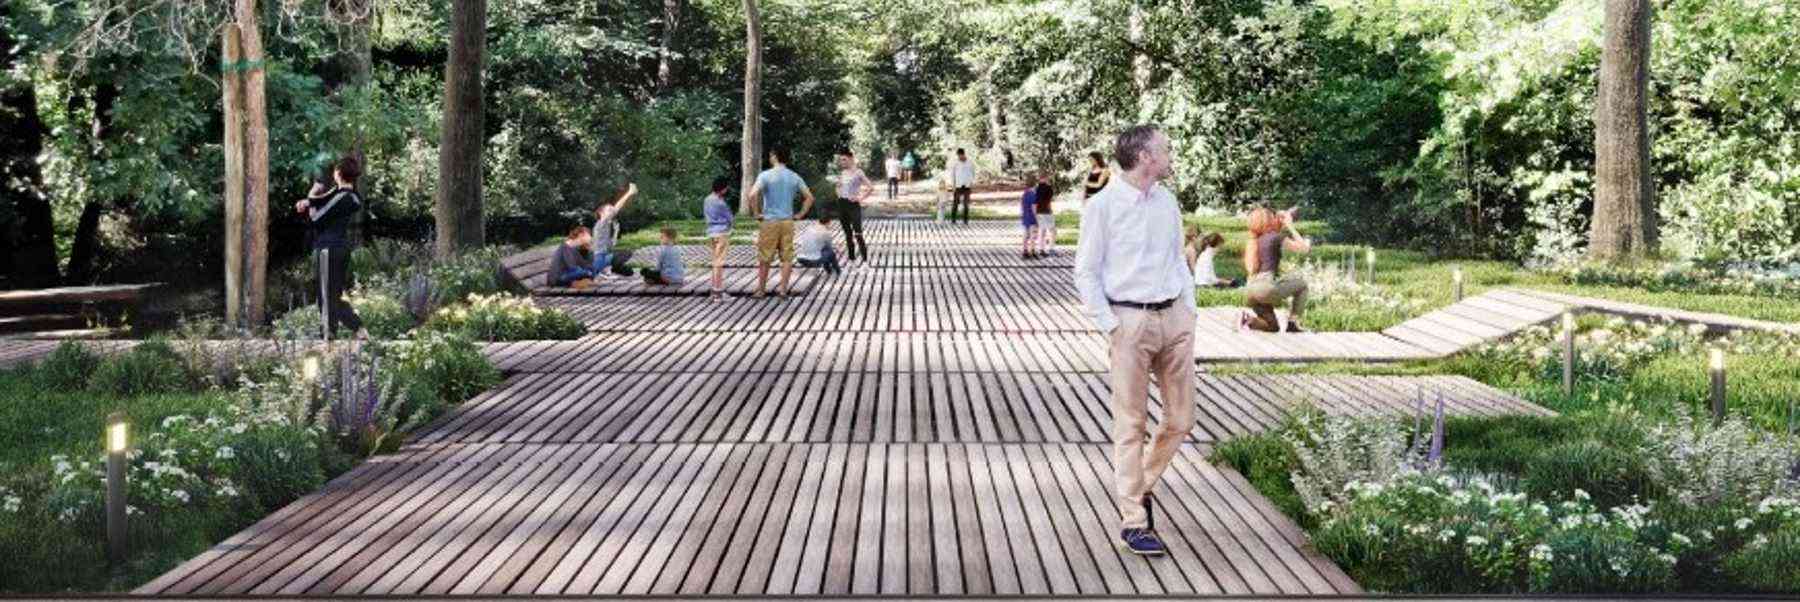 Le immagini del nuovo Parco Urbano di Milano Marittima proiettate all'ingresso della pineta